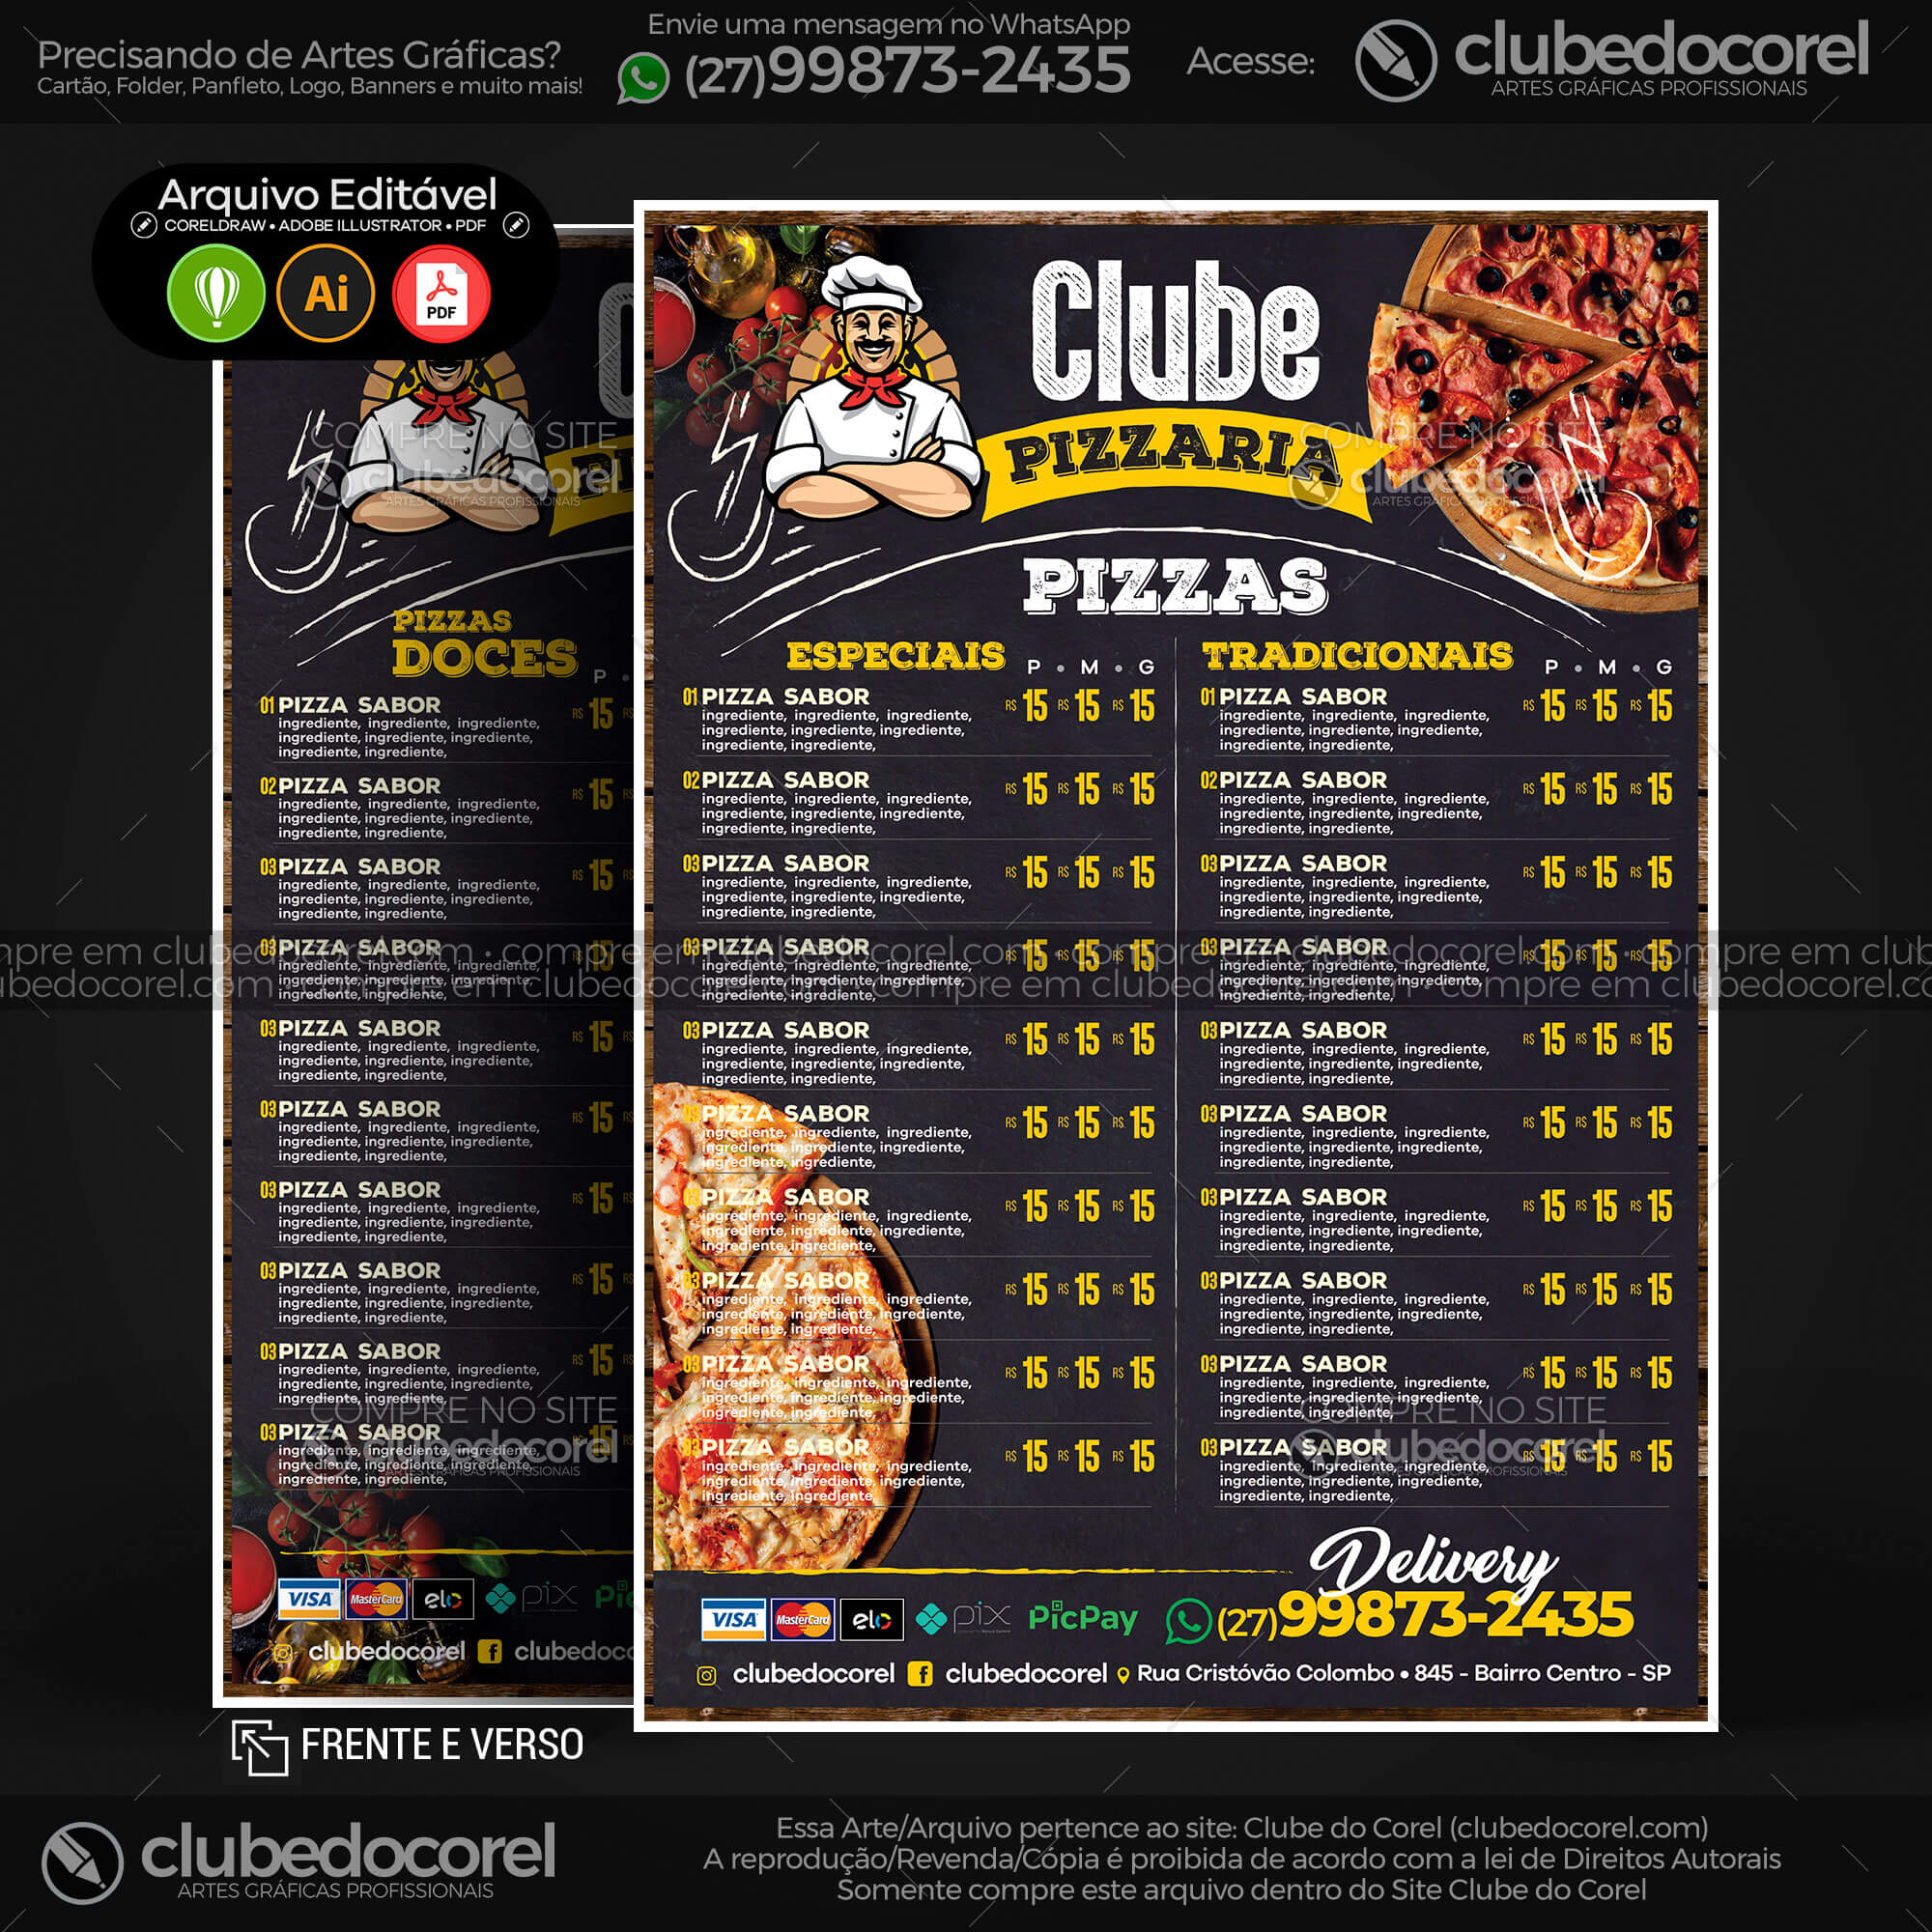 Cardápio Pizzaria - Pizza e Hamburguer (Lanche) - Modelo pronto Editável  #01 [CDR AI PDF] | Clube do Corel - cardapio pronto